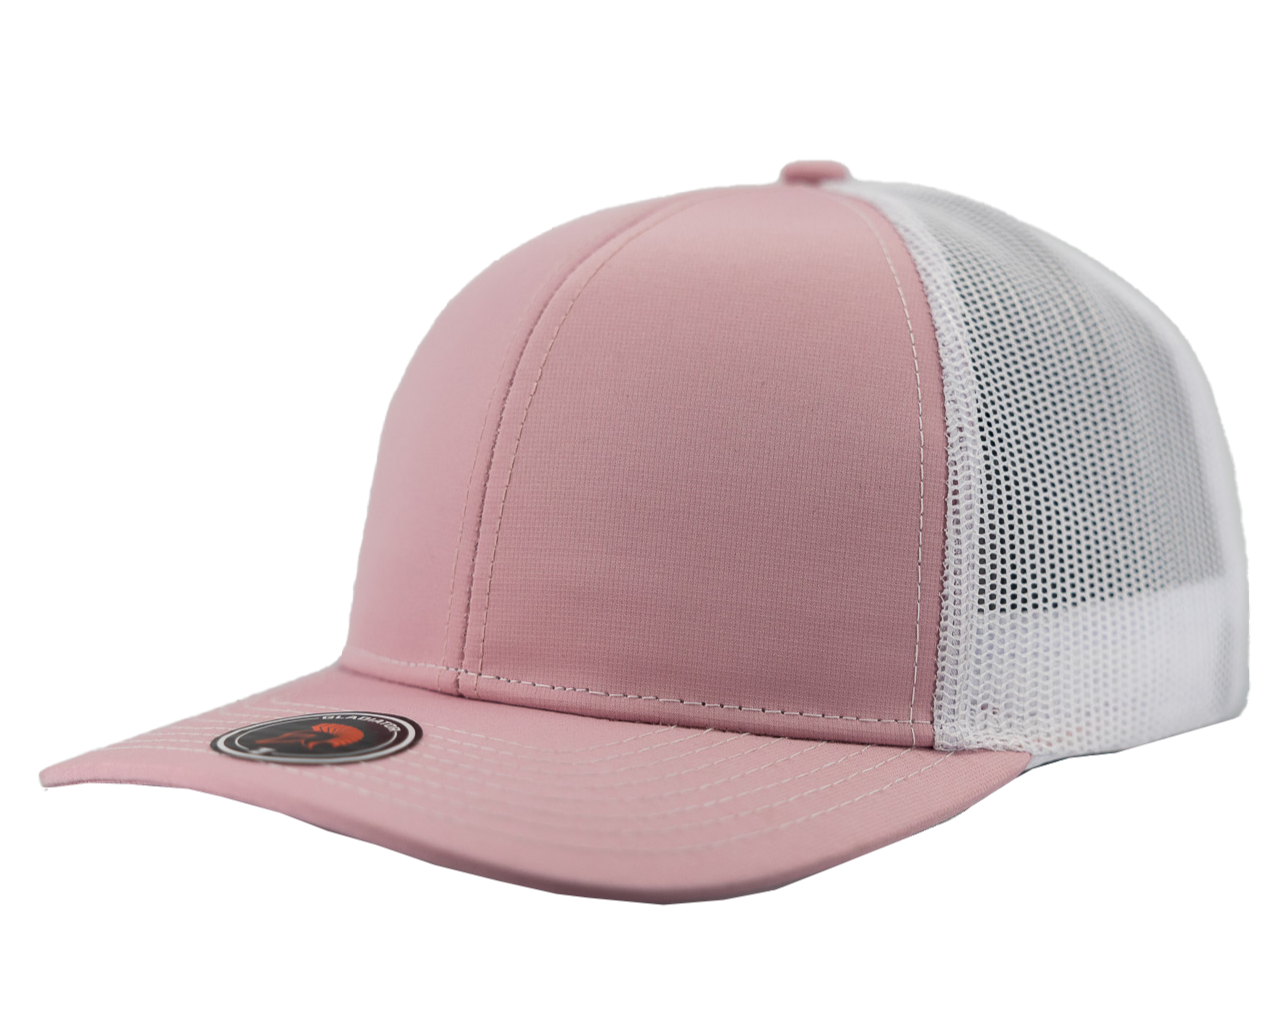 Gladiator-Water Repellent hat-Zapped Headwear-Snapback-Custom hat-Zapped Headwear-pink-white-side